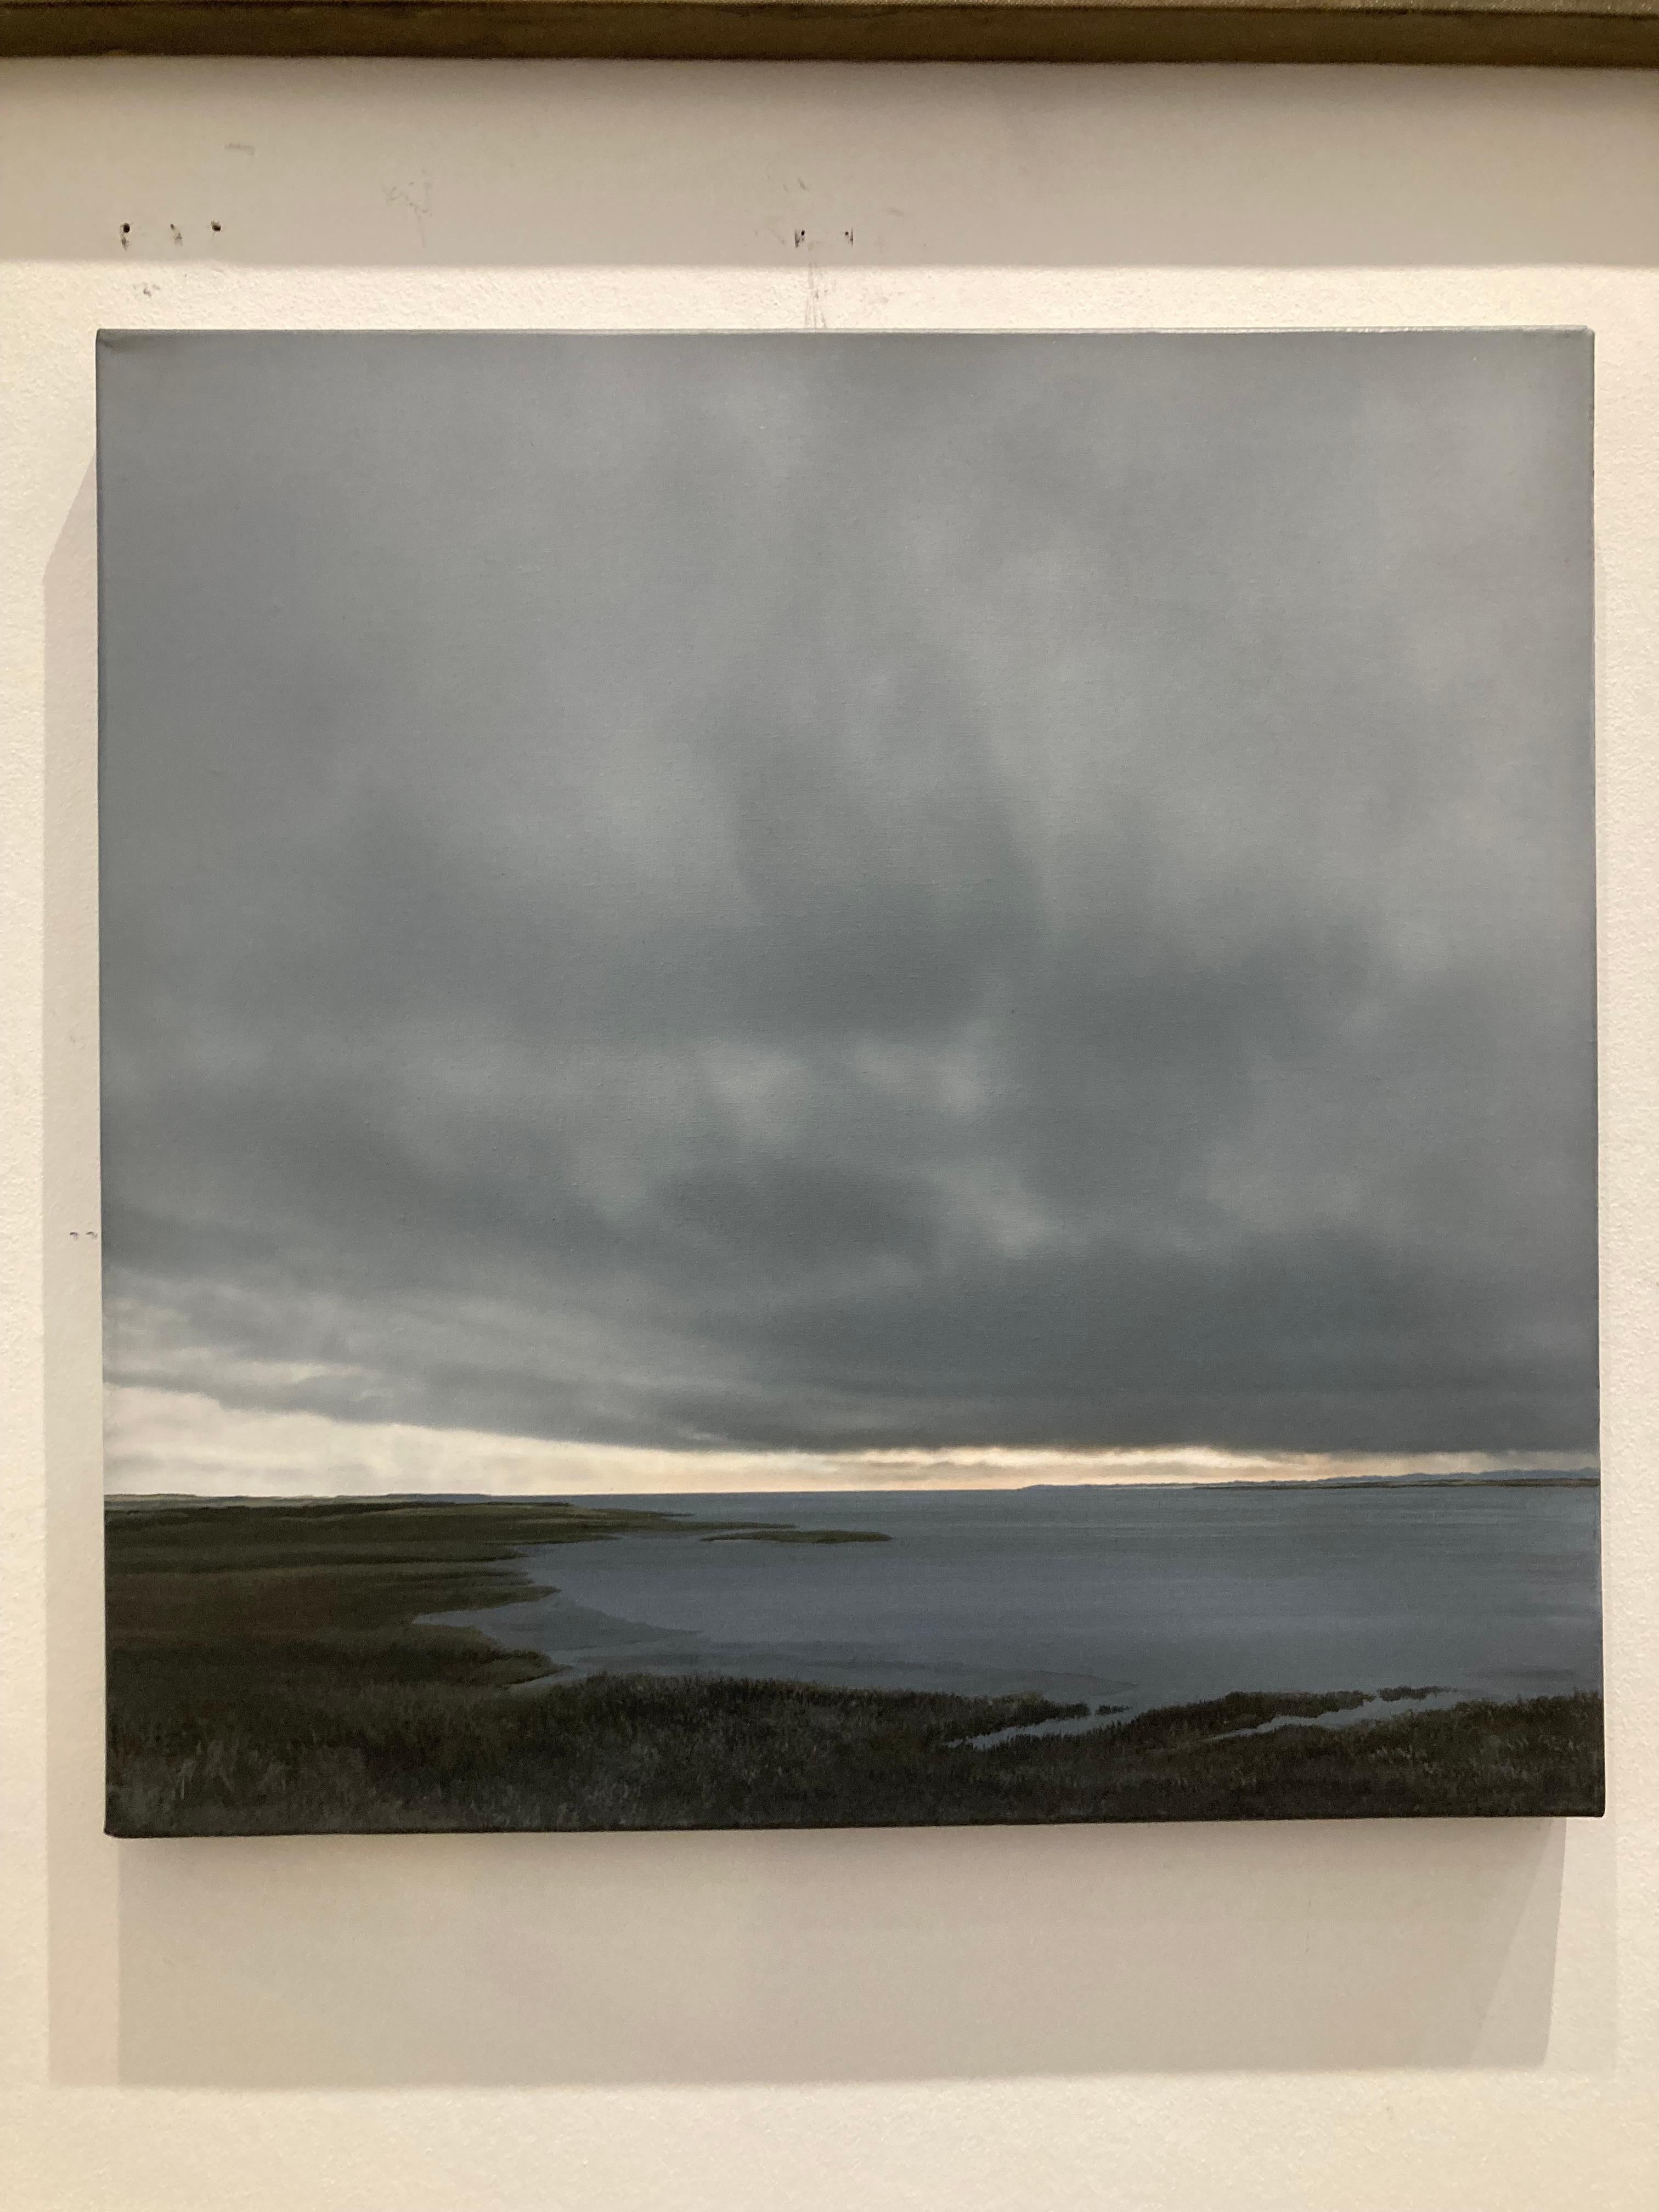 Peinture contemporaine de paysage de plage en bord de mer, « Estuary in Changing Weather » - Contemporain Painting par Terry Watts